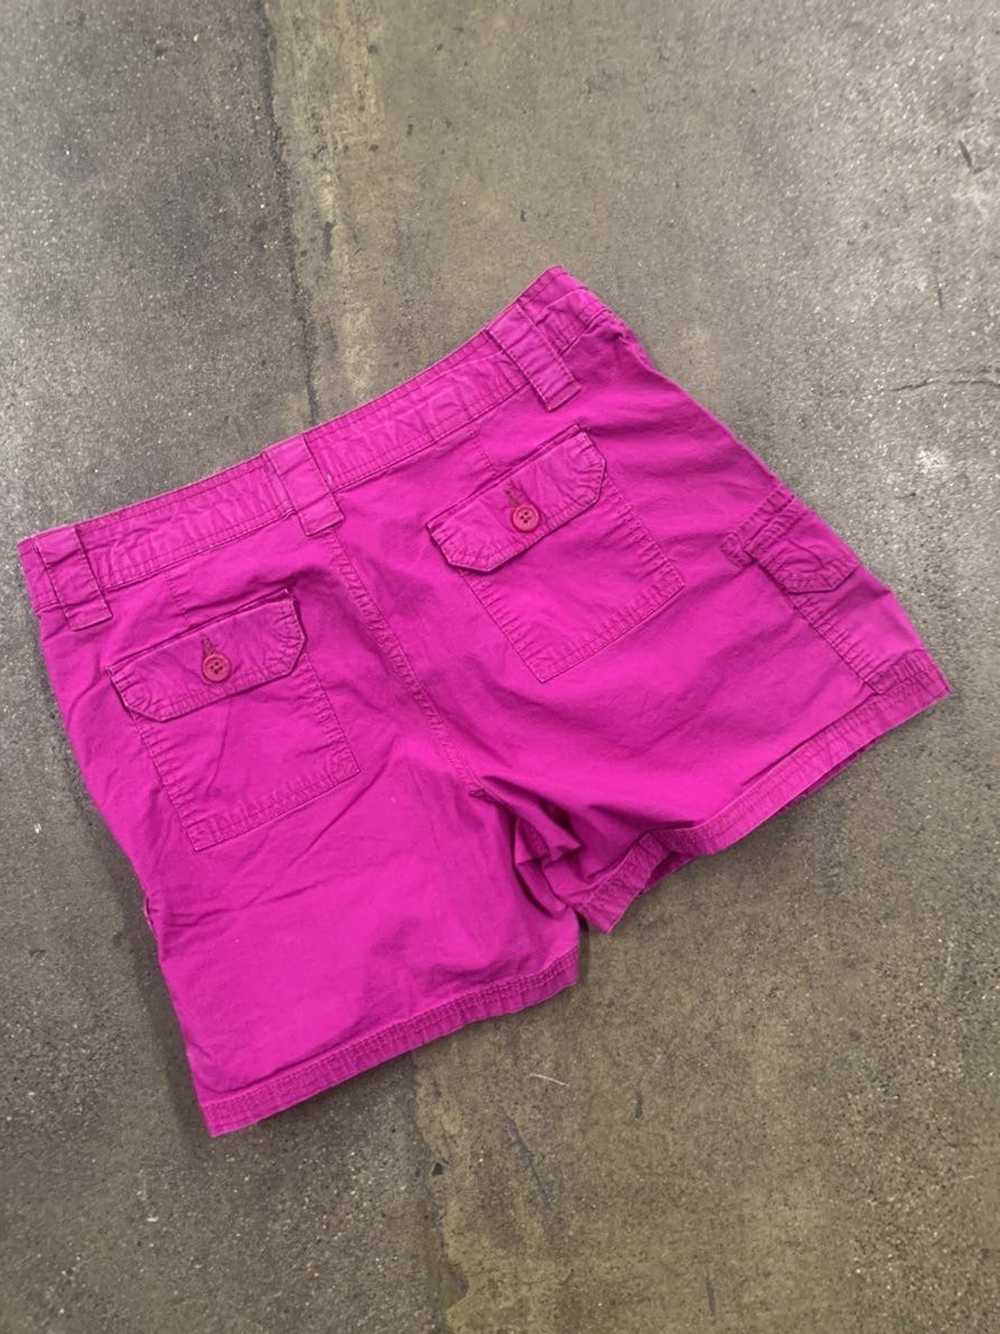 Vintage Vintage Bright Pink Barbie Cargo Shorts - image 3